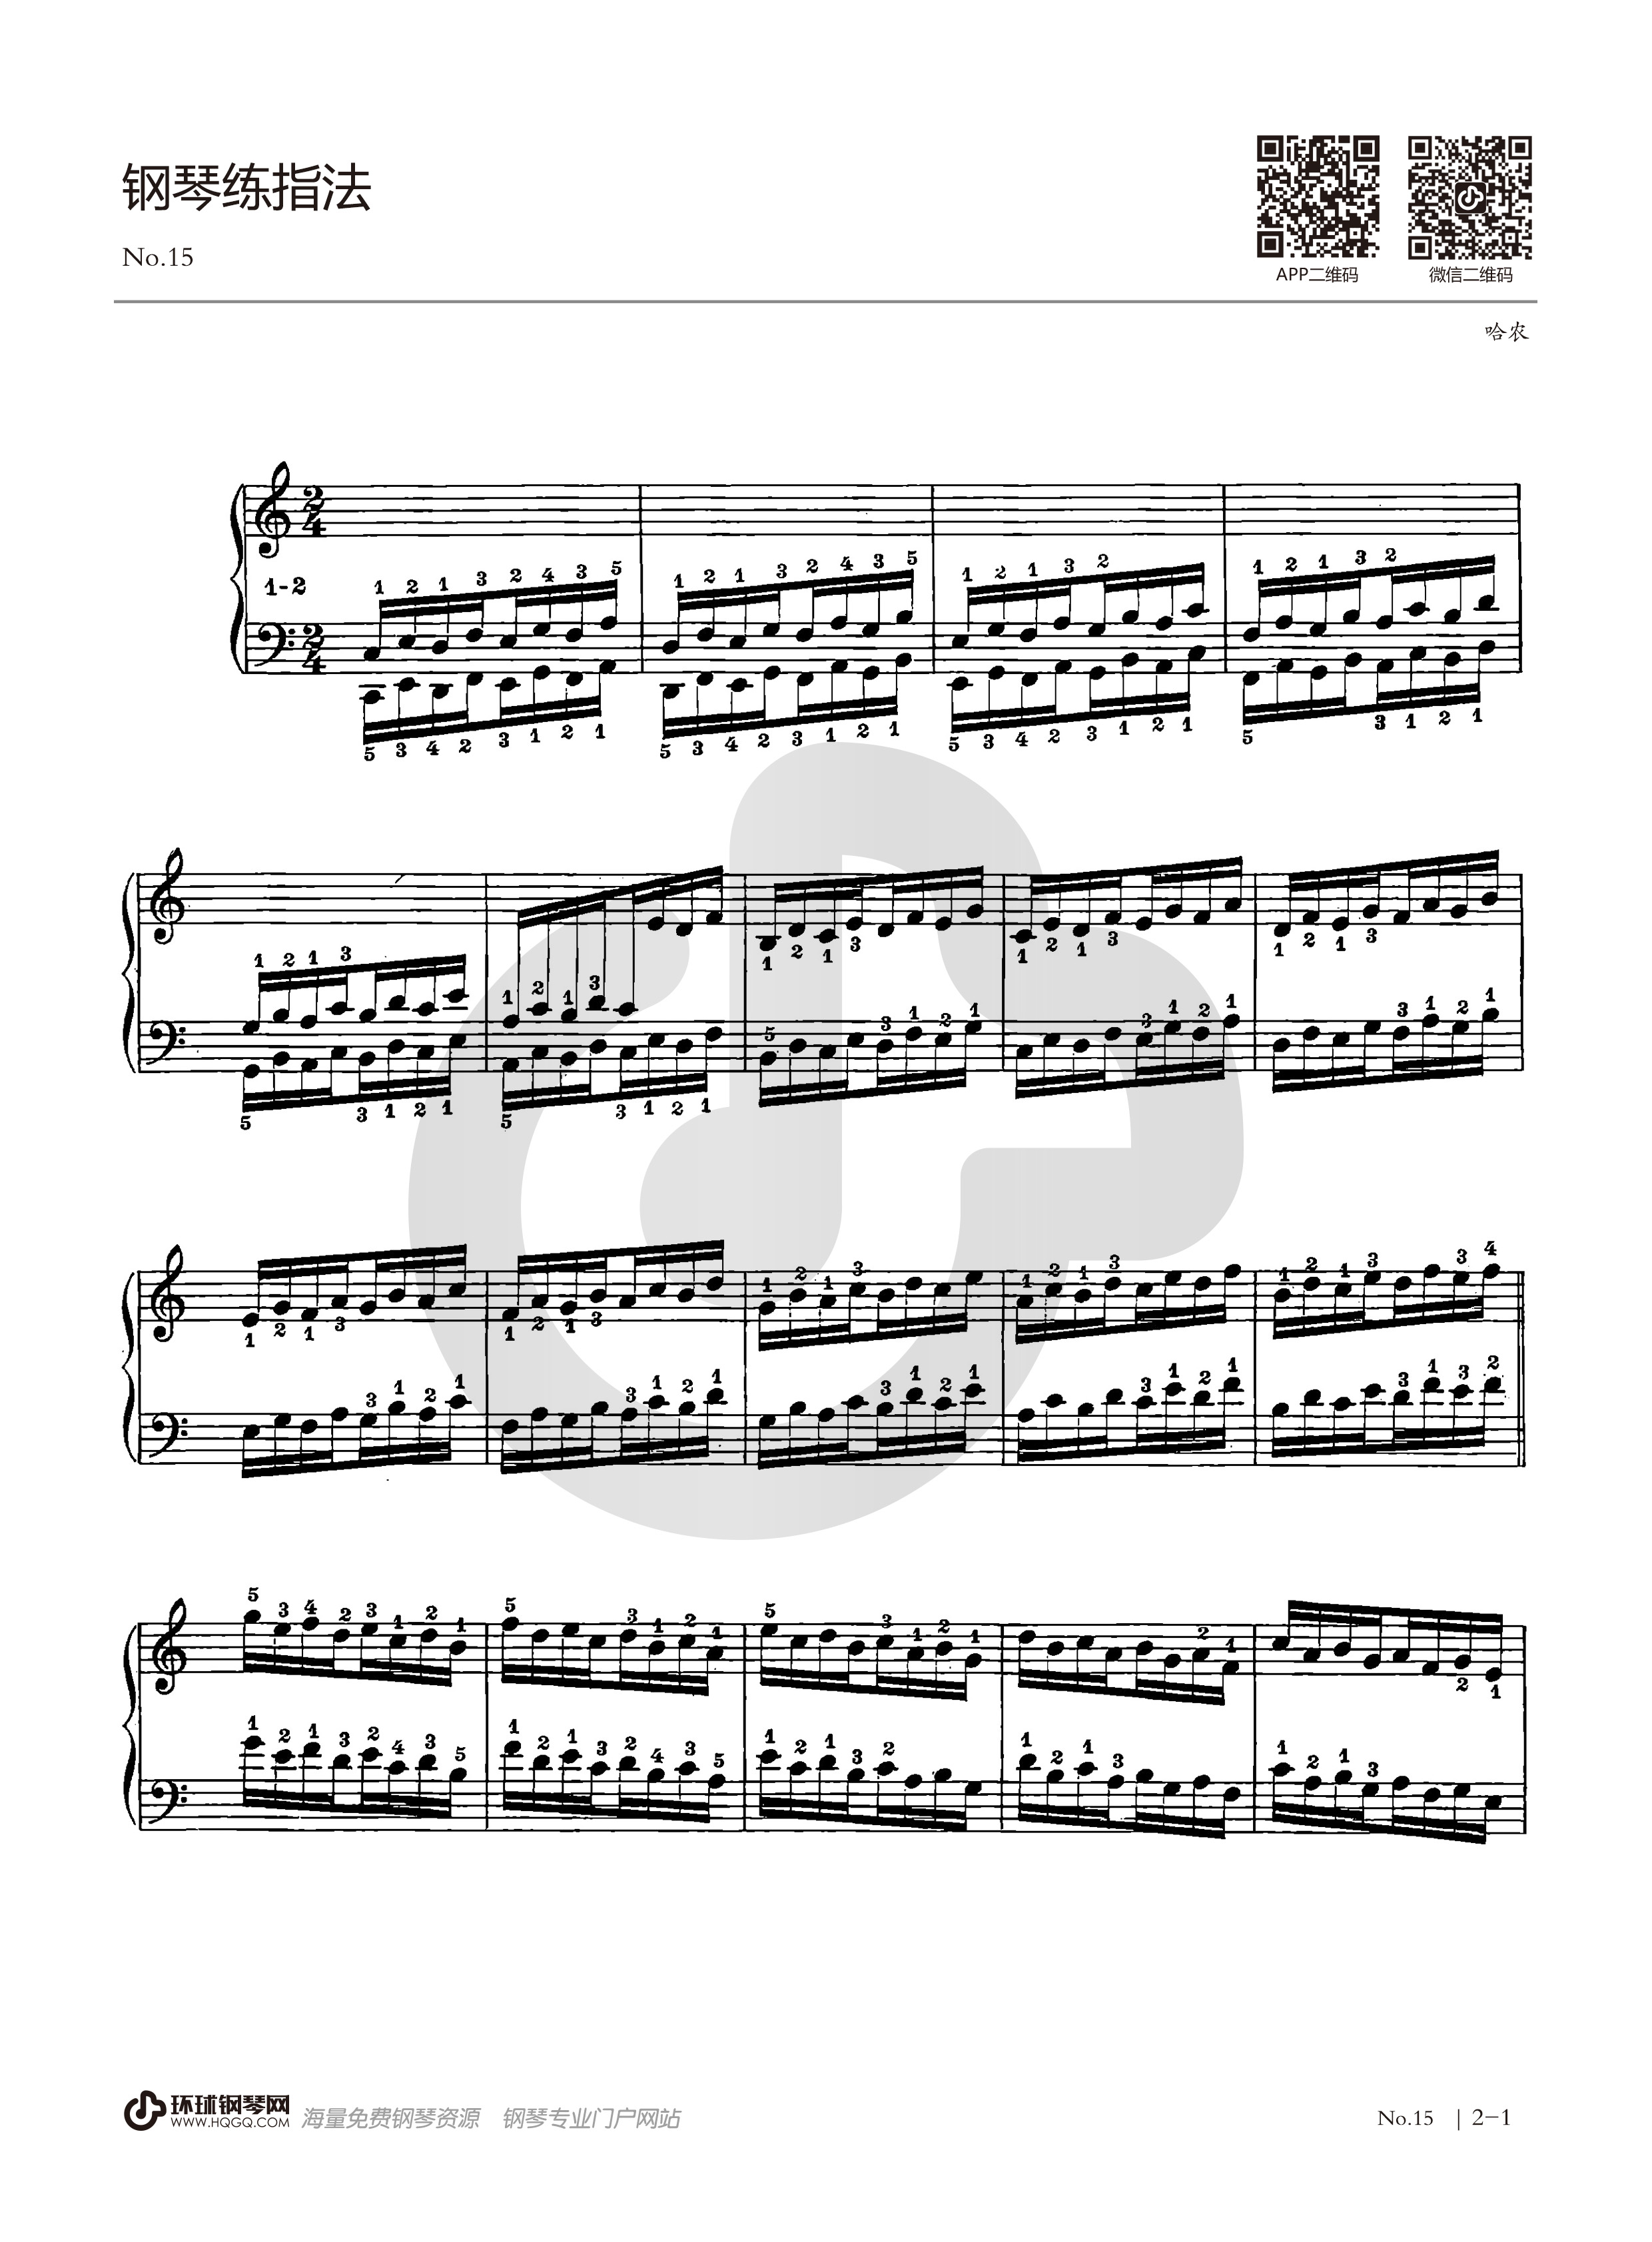 《哈农钢琴练指法》-no.15